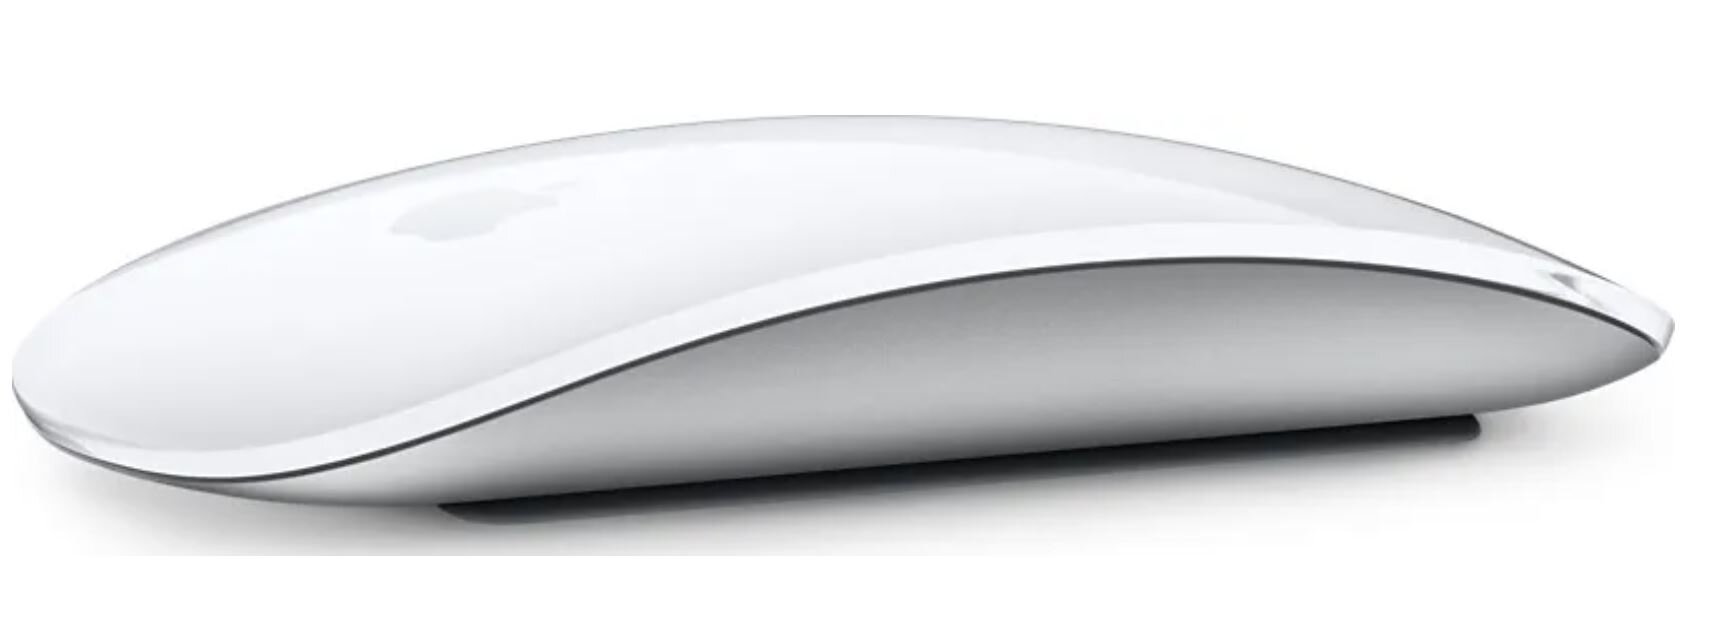 Мышка для макбука Apple Magic Mouse